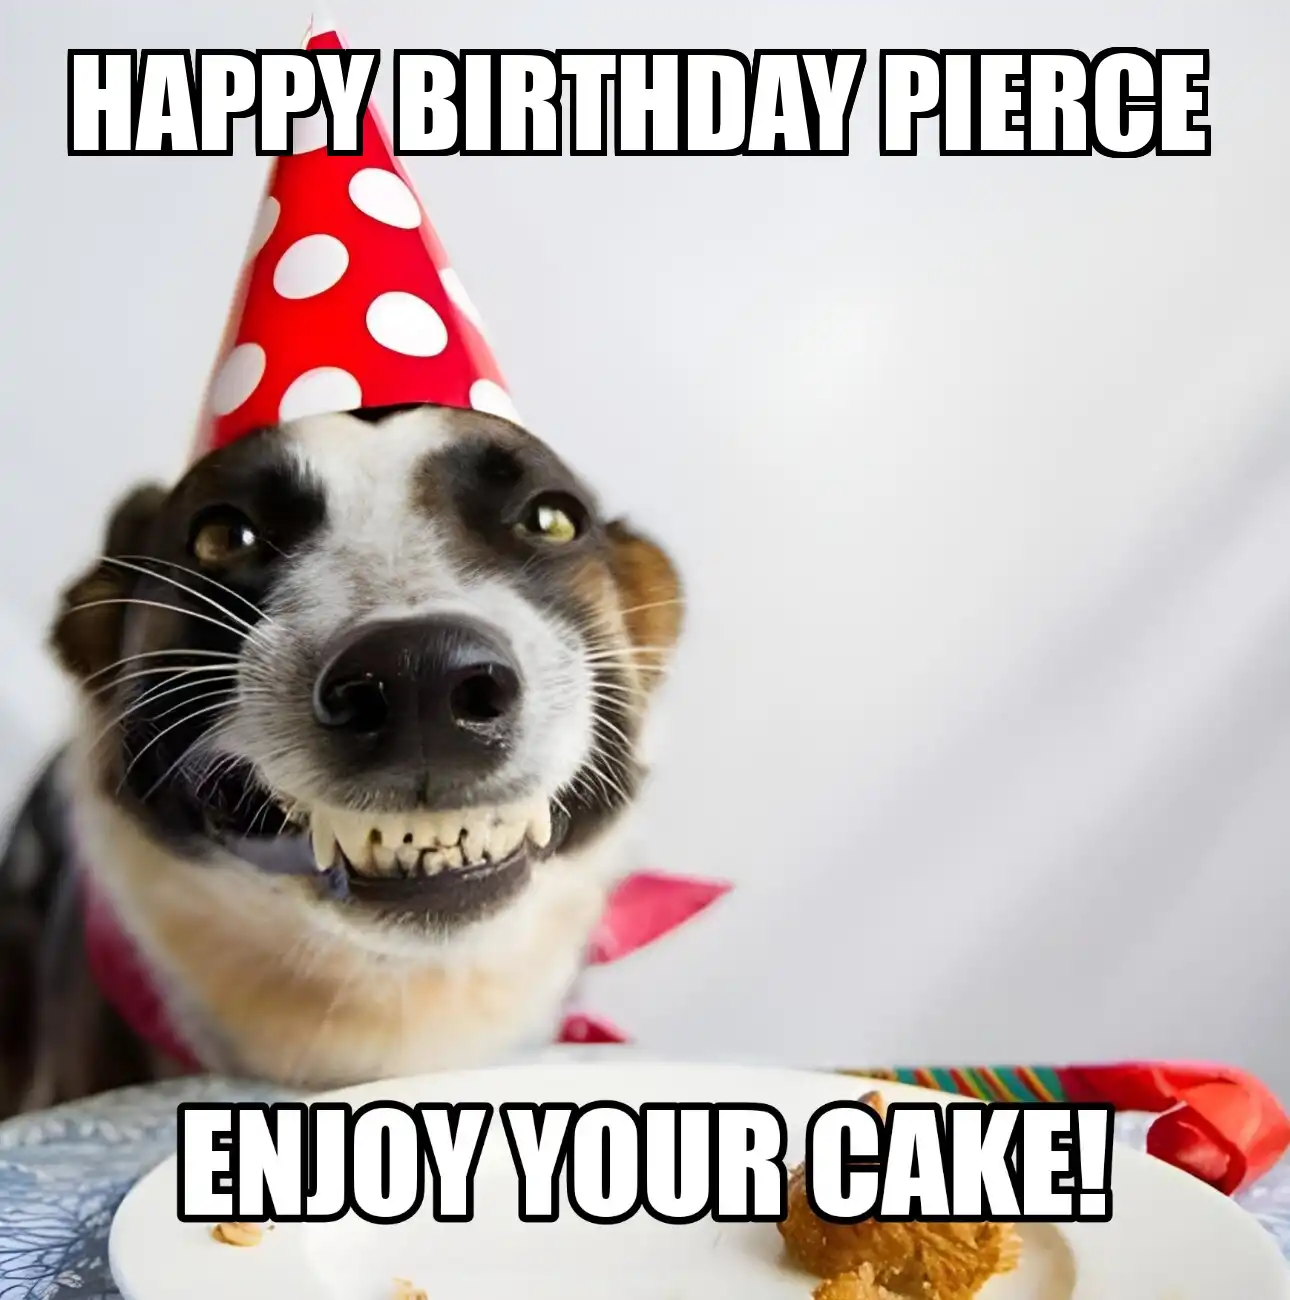 Happy Birthday Pierce Enjoy Your Cake Dog Meme